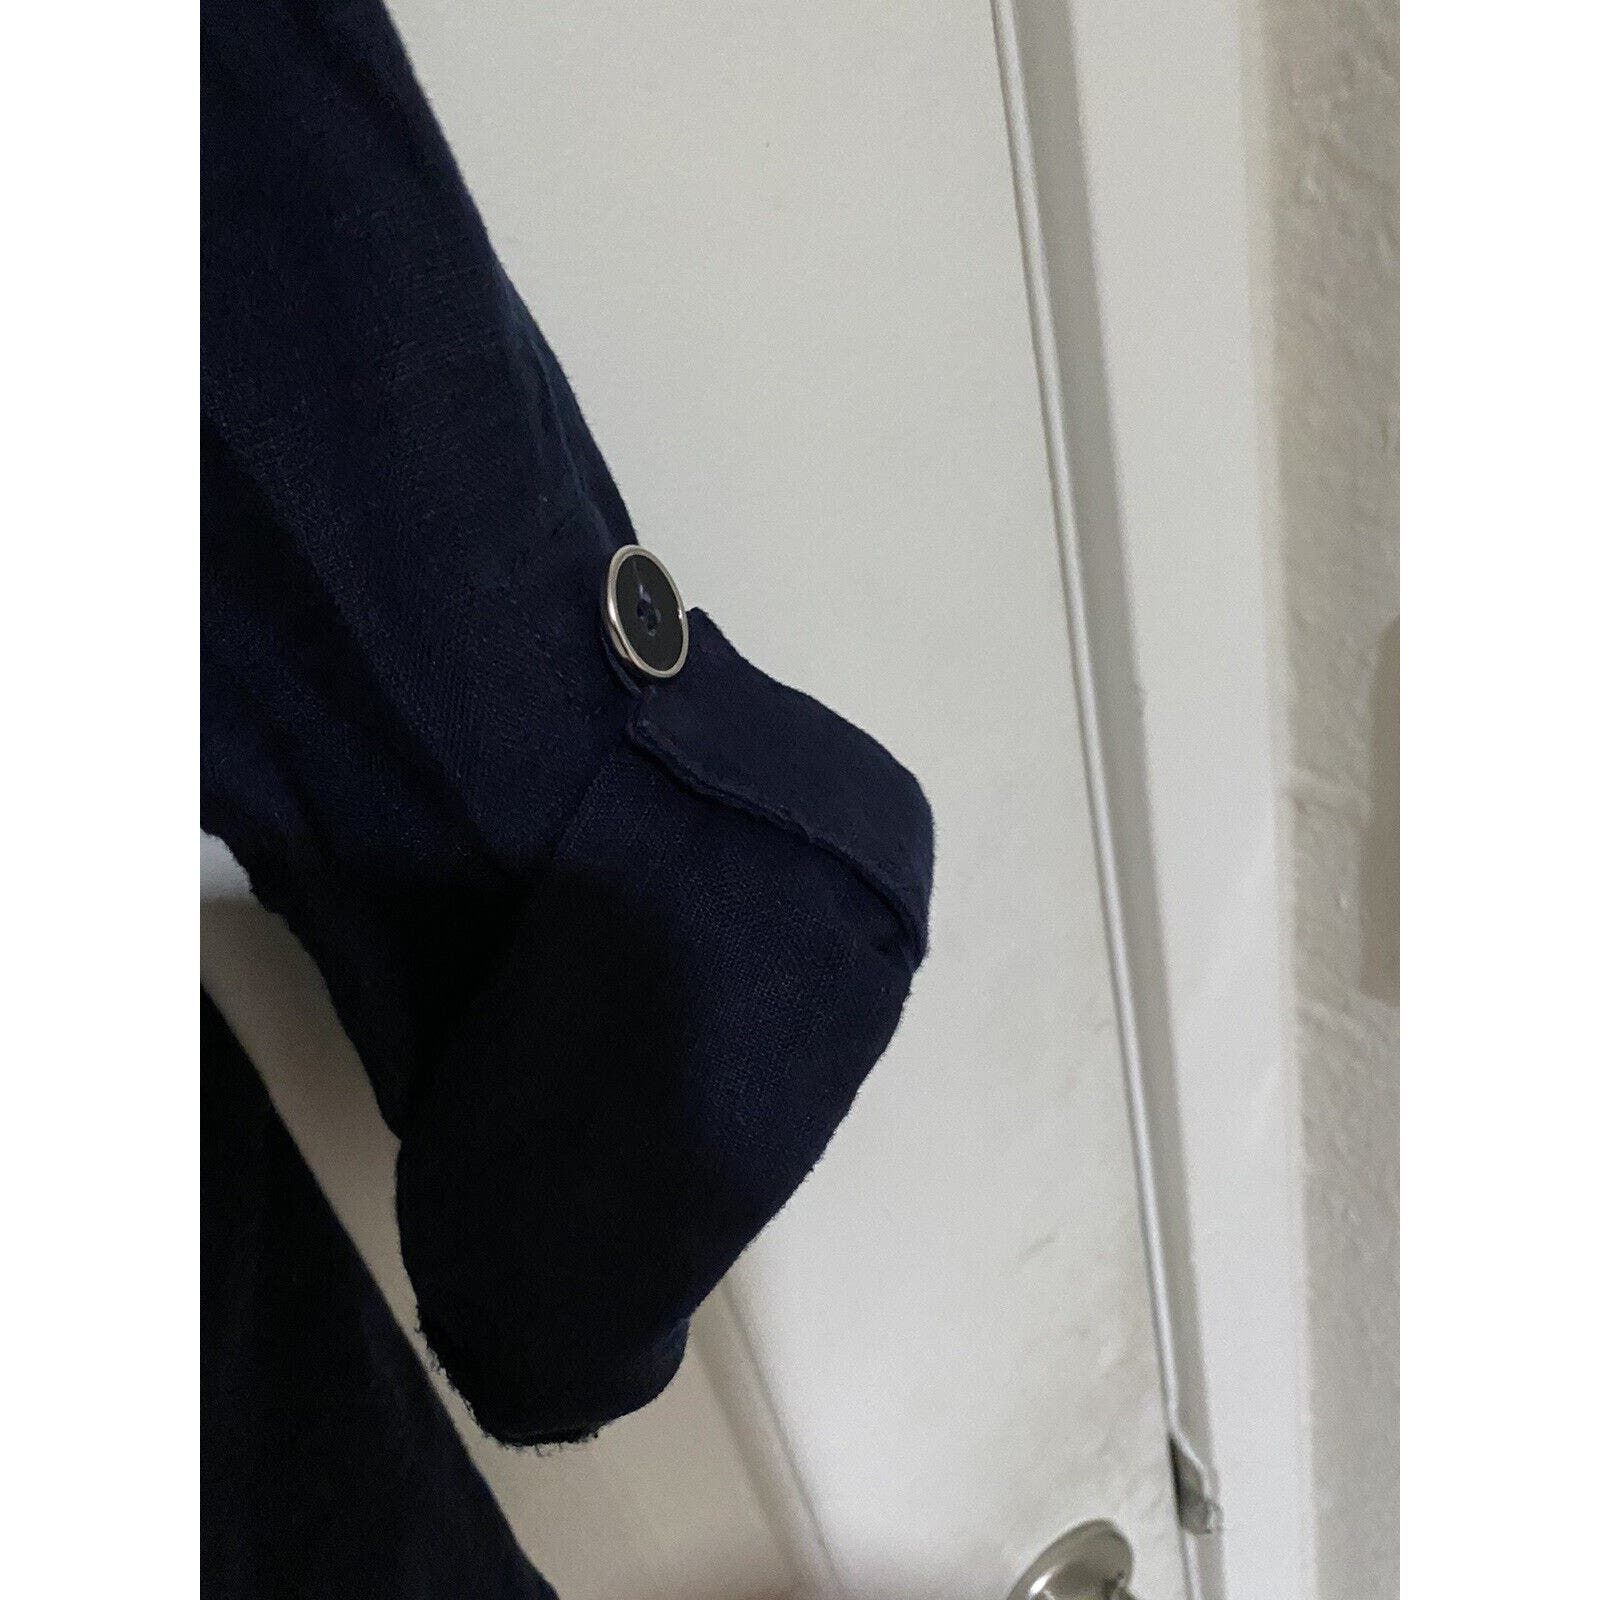 Inc INC Concepts Jacket Women Sz Med Button Up Coat Blue Linen Size M / US 6-8 / IT 42-44 - 4 Thumbnail